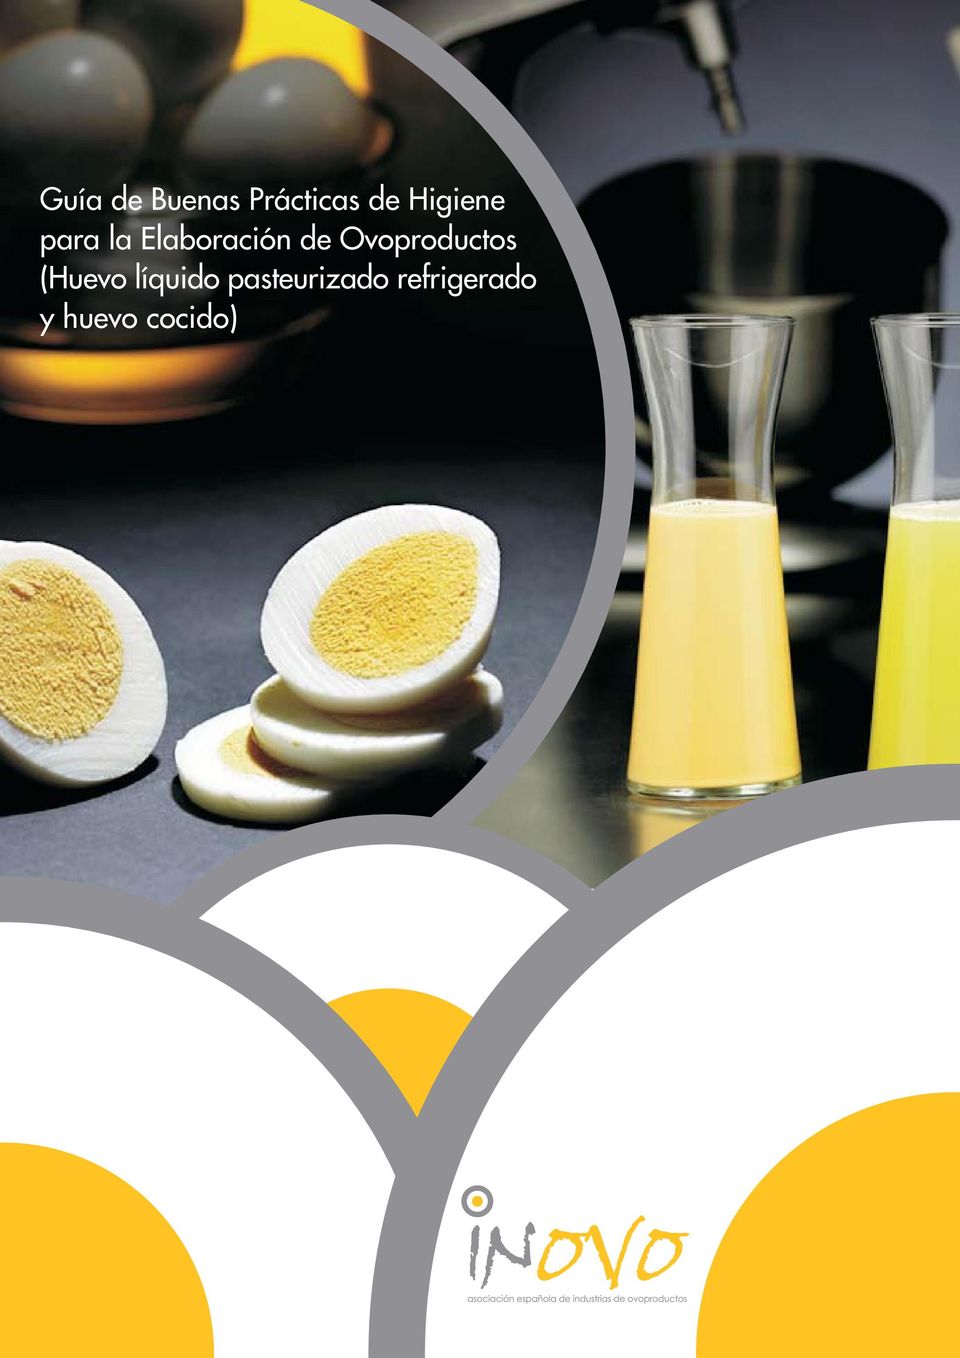 Ovoproductos (Huevo líquido